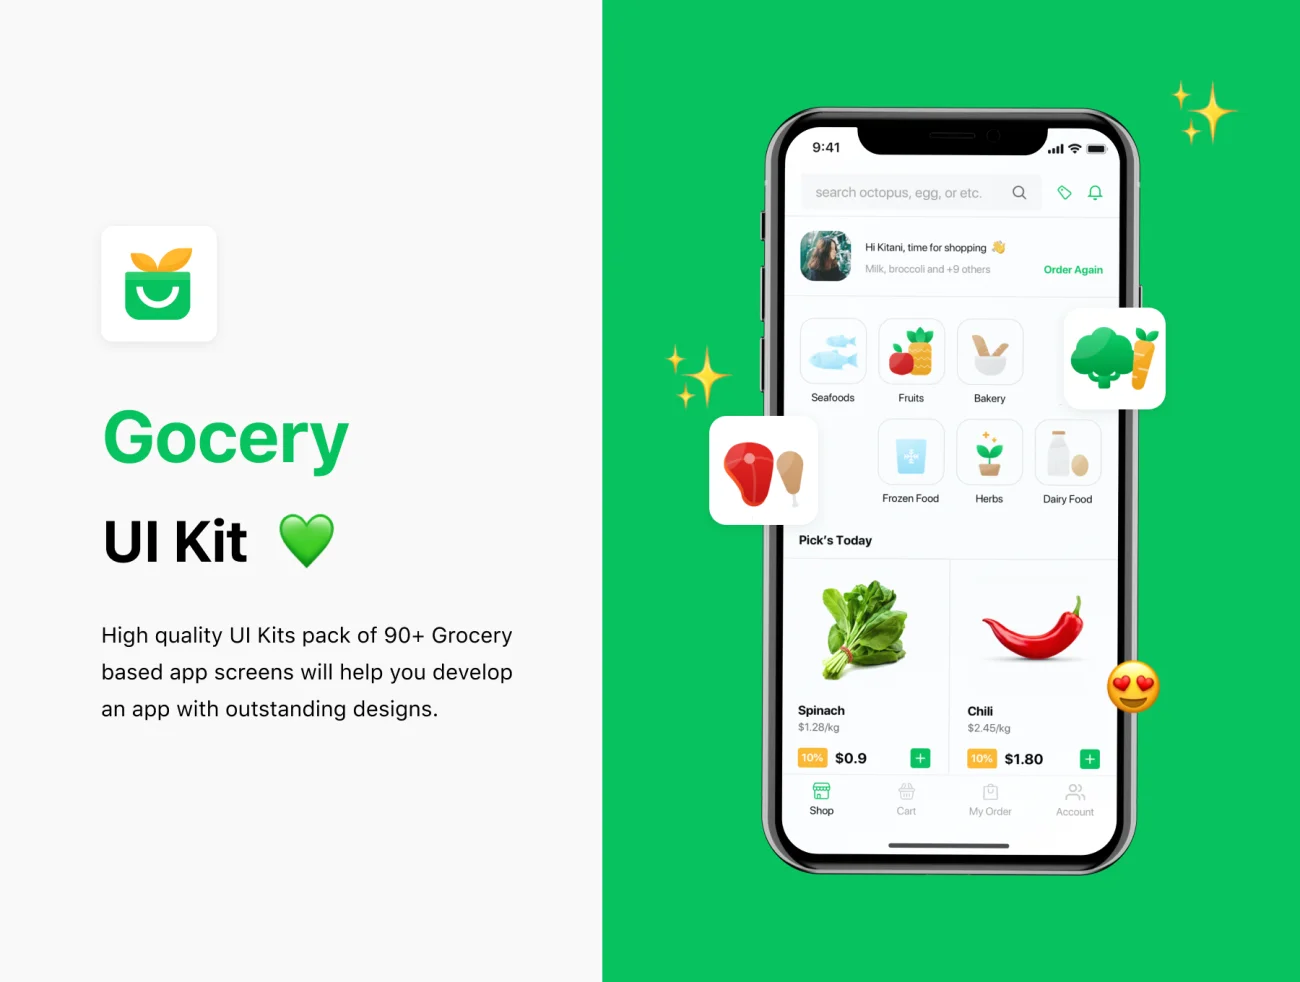 Grocery App ui kit 95屏生活商超蔬菜水果日用品采购应用UI设计套件-3D/图标、UI/UX、ui套件、列表、卡片式、图表、地图、字体、应用、支付、注册、网购、表单、详情-到位啦UI